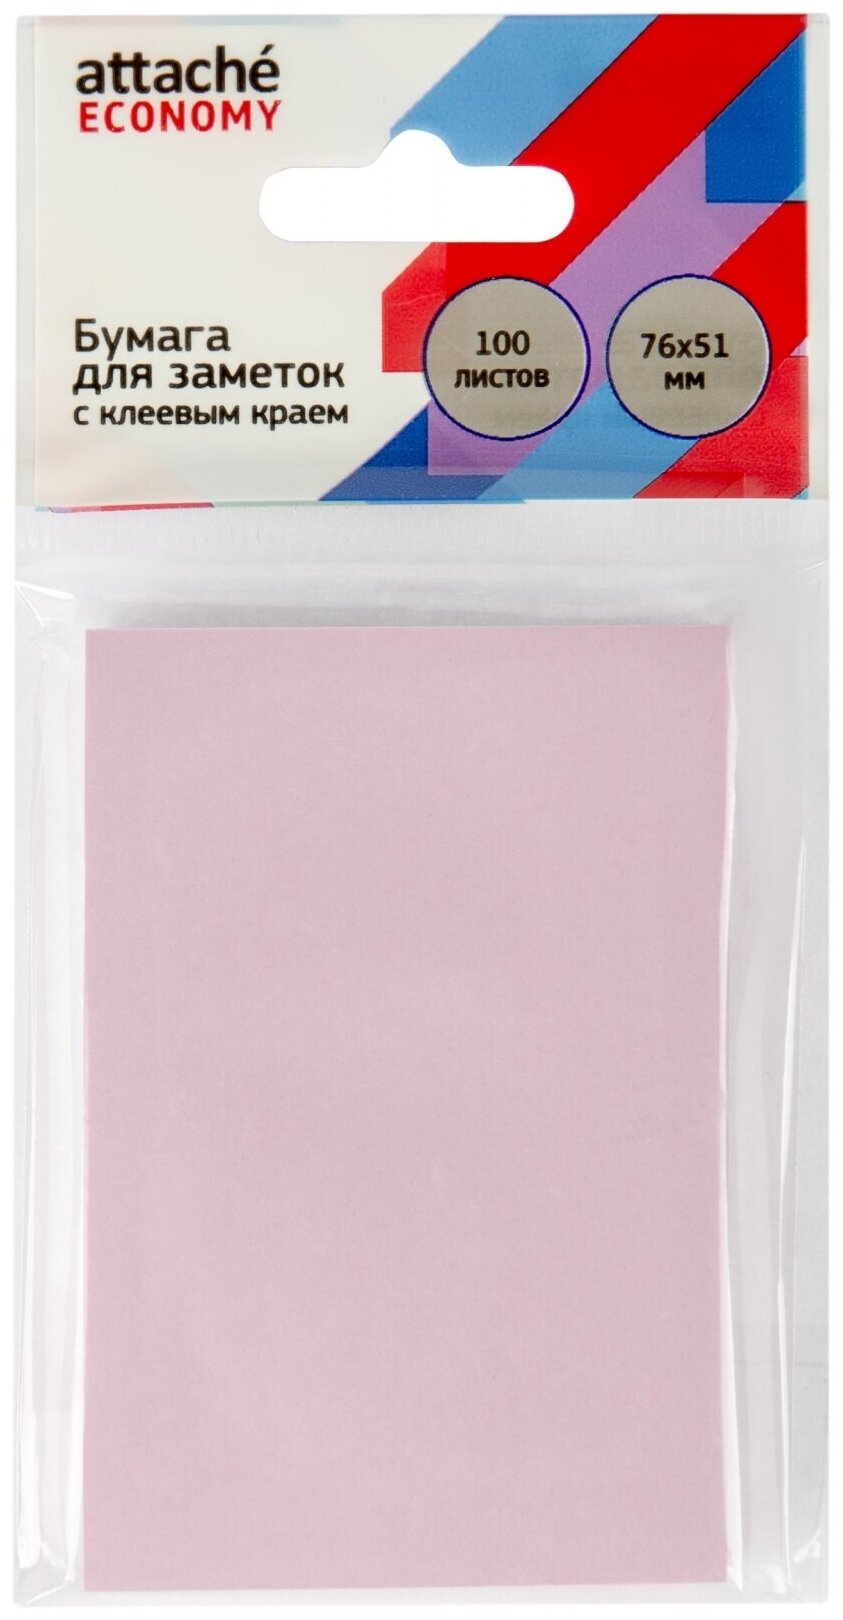 Бумага для заметок Attache Economy с клеевым краем, 76x51 мм, 100 листов, пастельный розовый